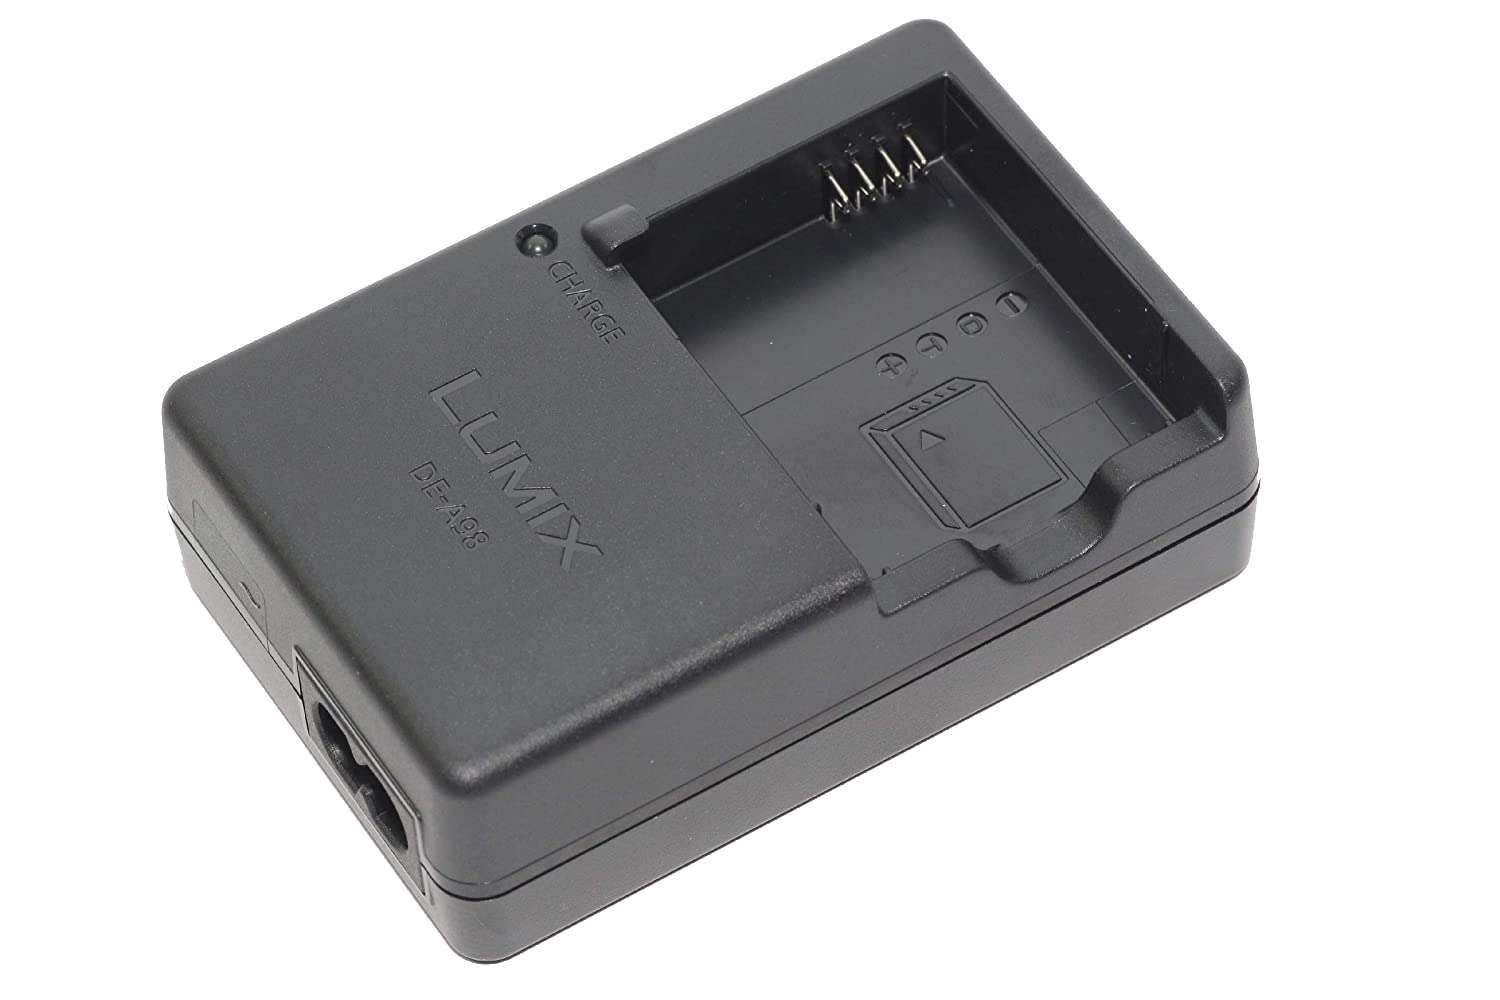 Panasonic DE-A98AB Battery charger - Charges DMW-BLG10 TZ80 TZ90 TZ100 or GX80